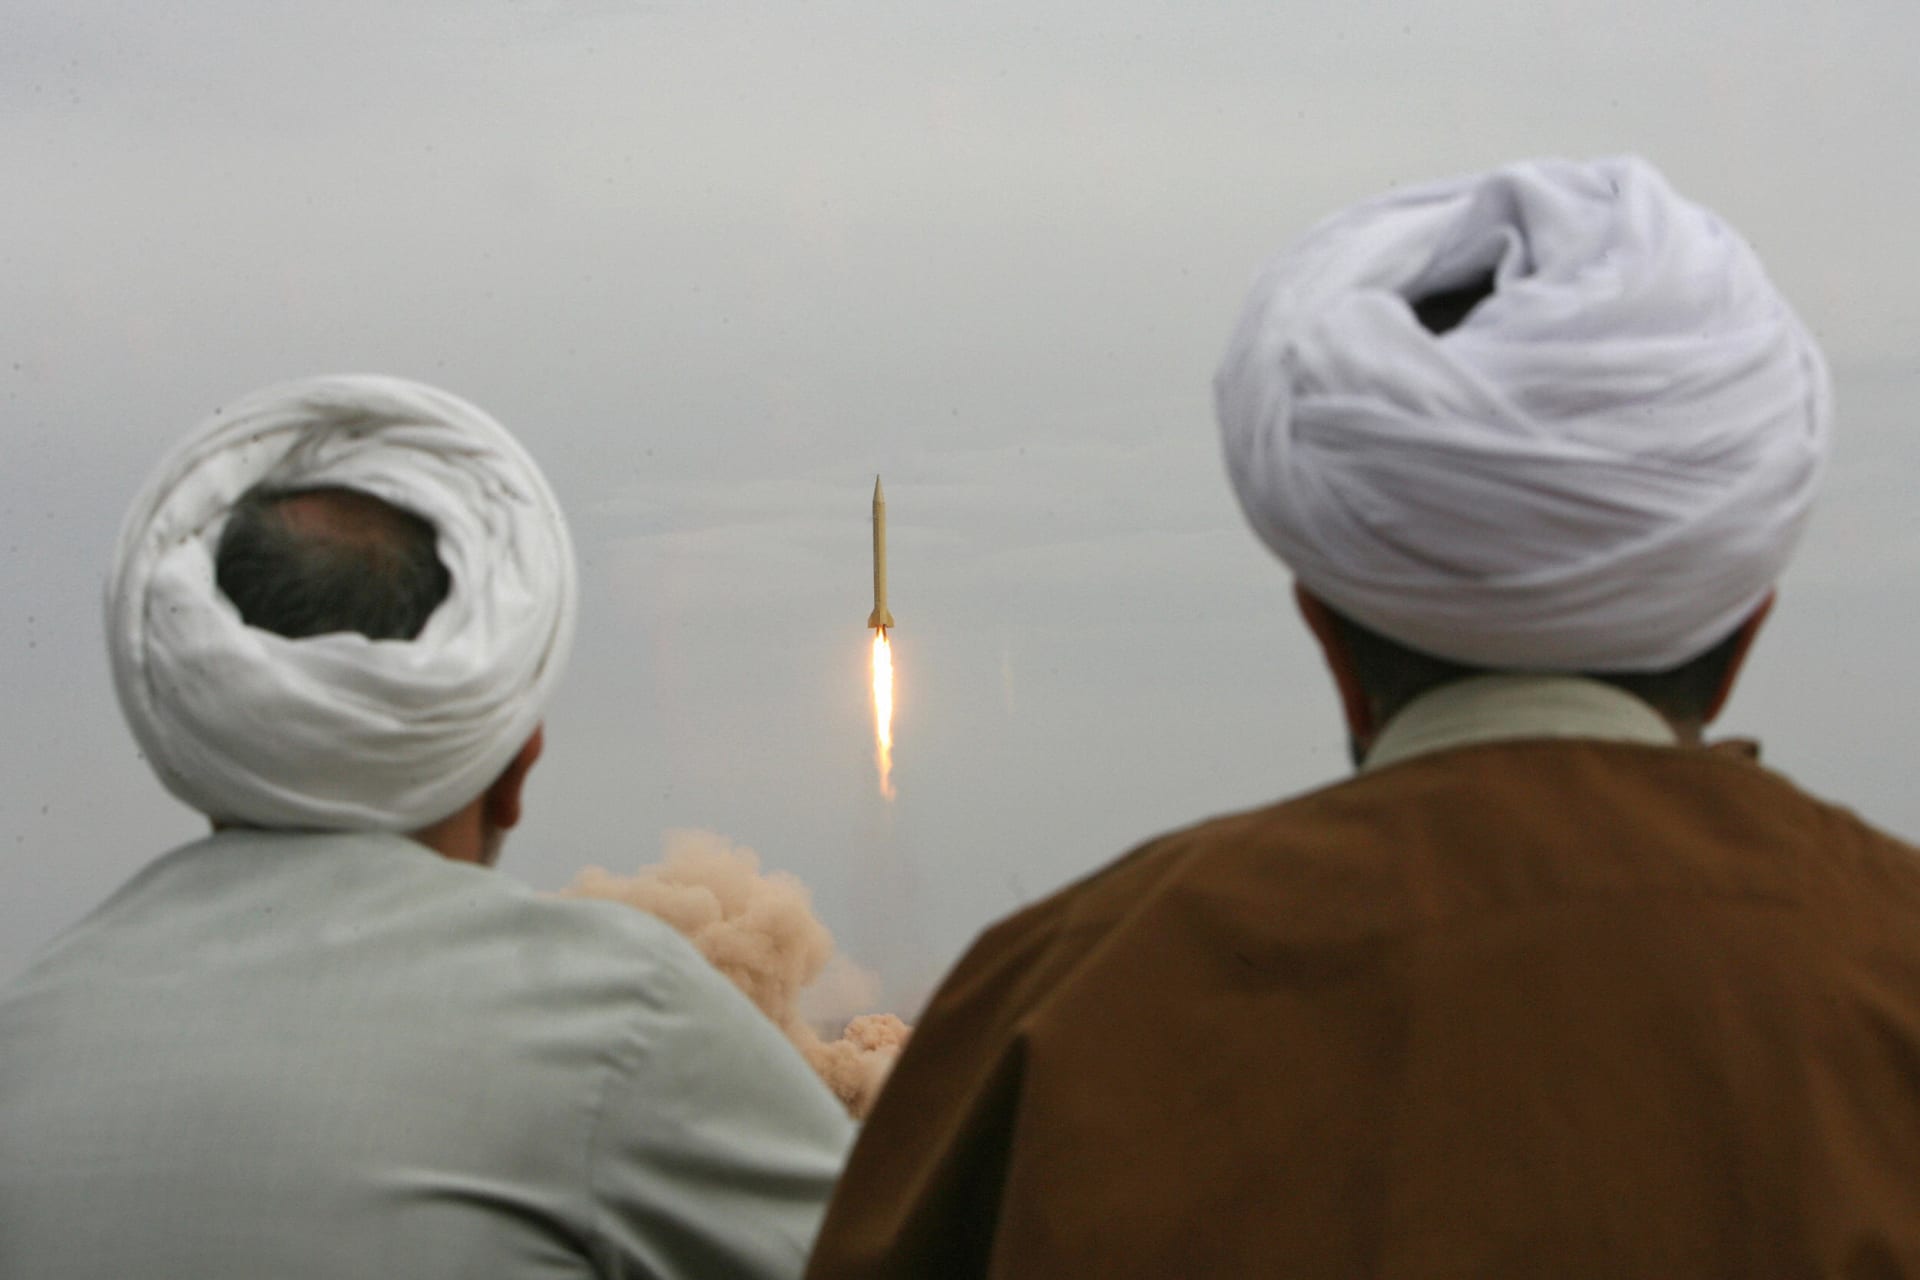 إيران تُعلن تجربة صاروخها الباليستي "الأكثر تطورا" وتستعرض ميزاتها